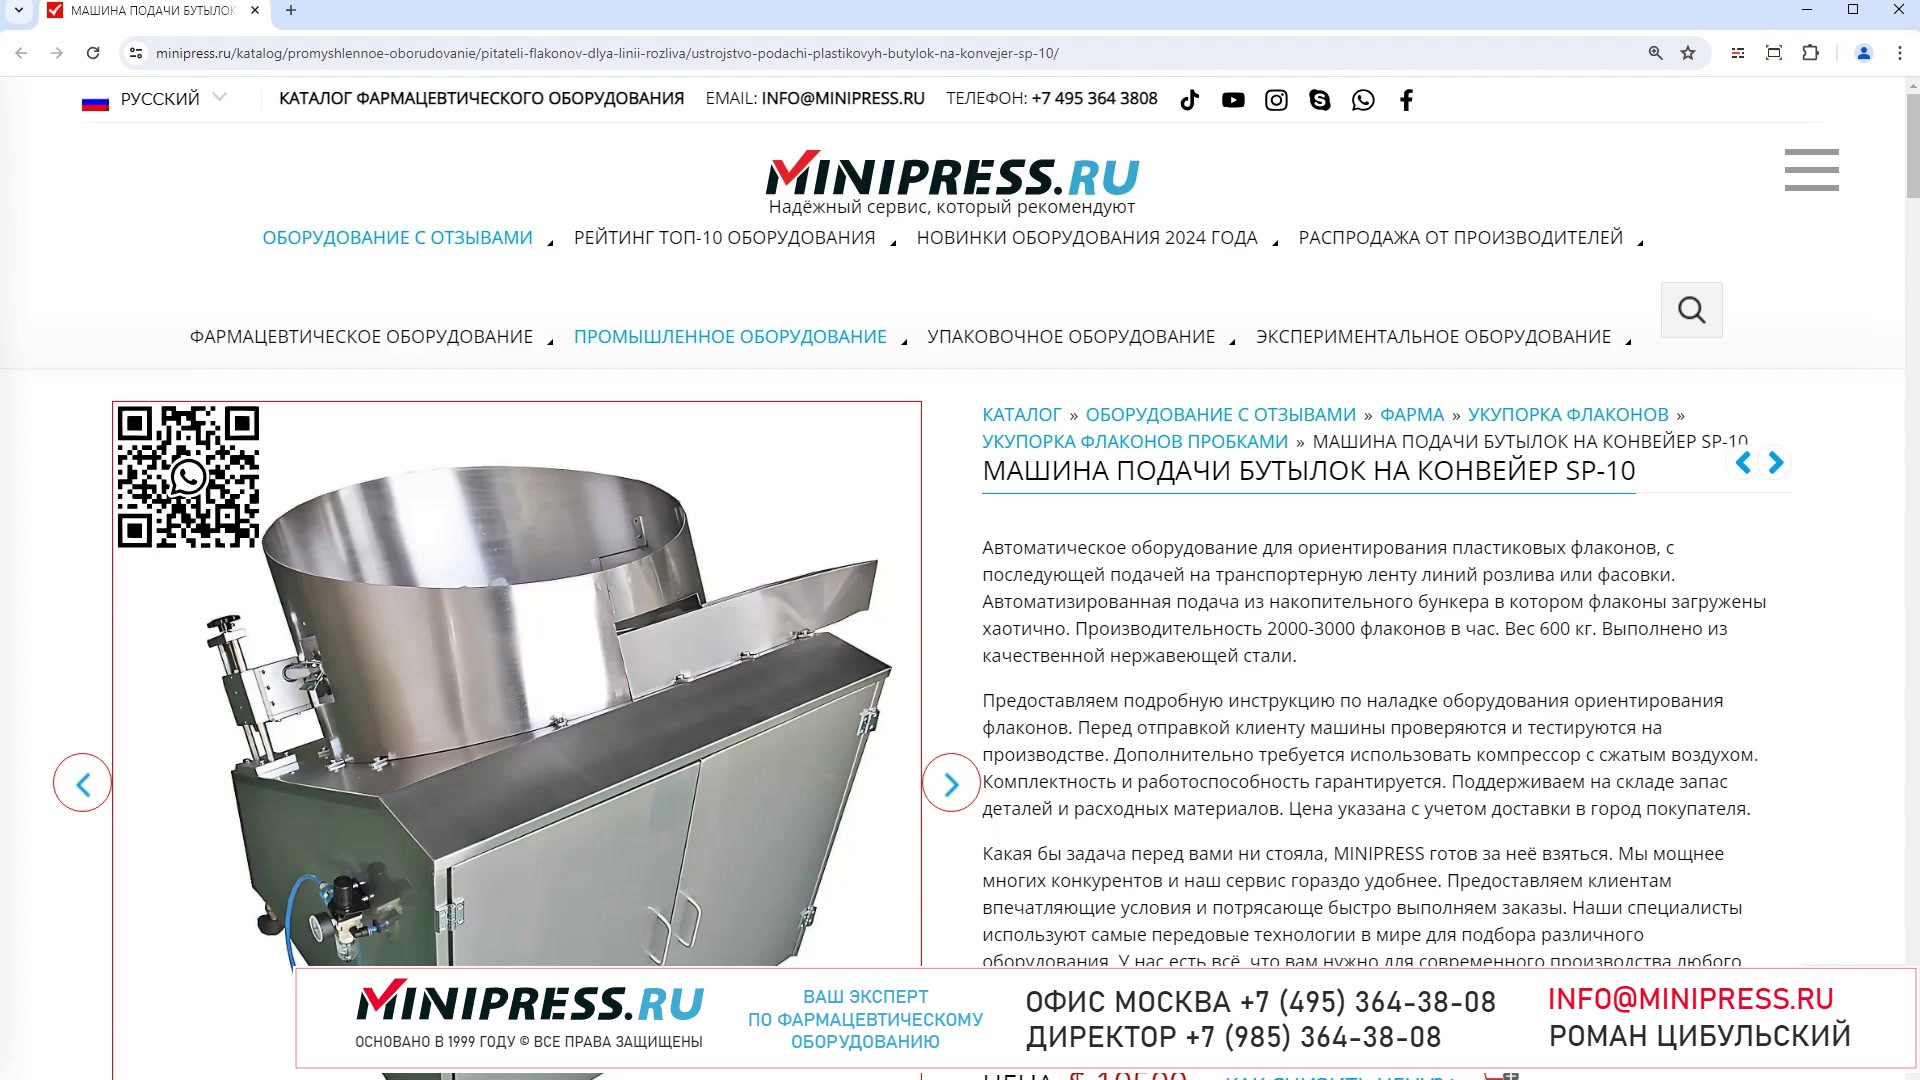 Minipress.ru Машина подачи бутылок на конвейер SP-10